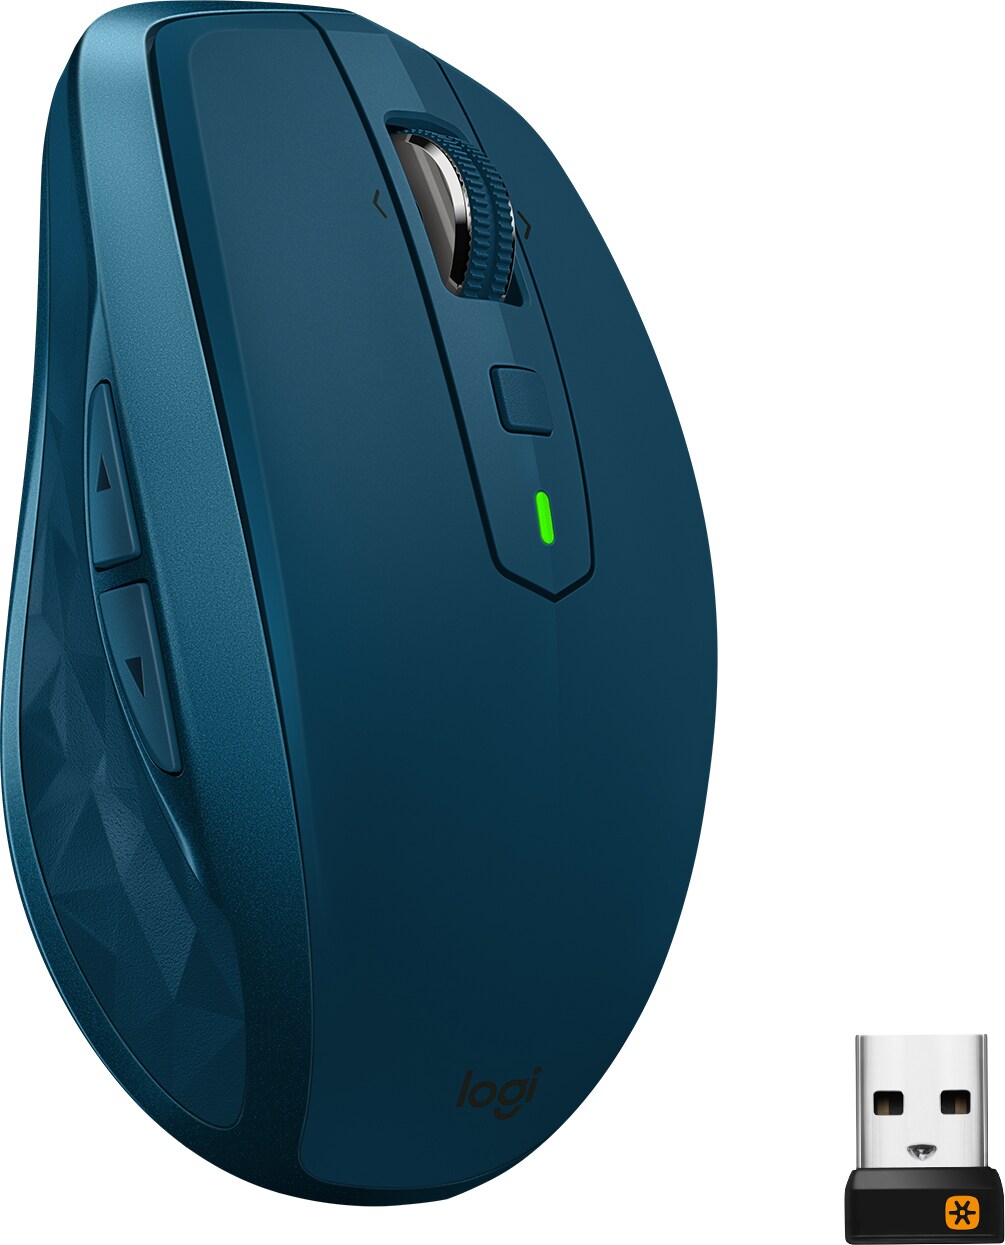 Logitech MX Anywhere 2S trådløs Bluetooth mus (grønn) - PC-mus - Elkjøp